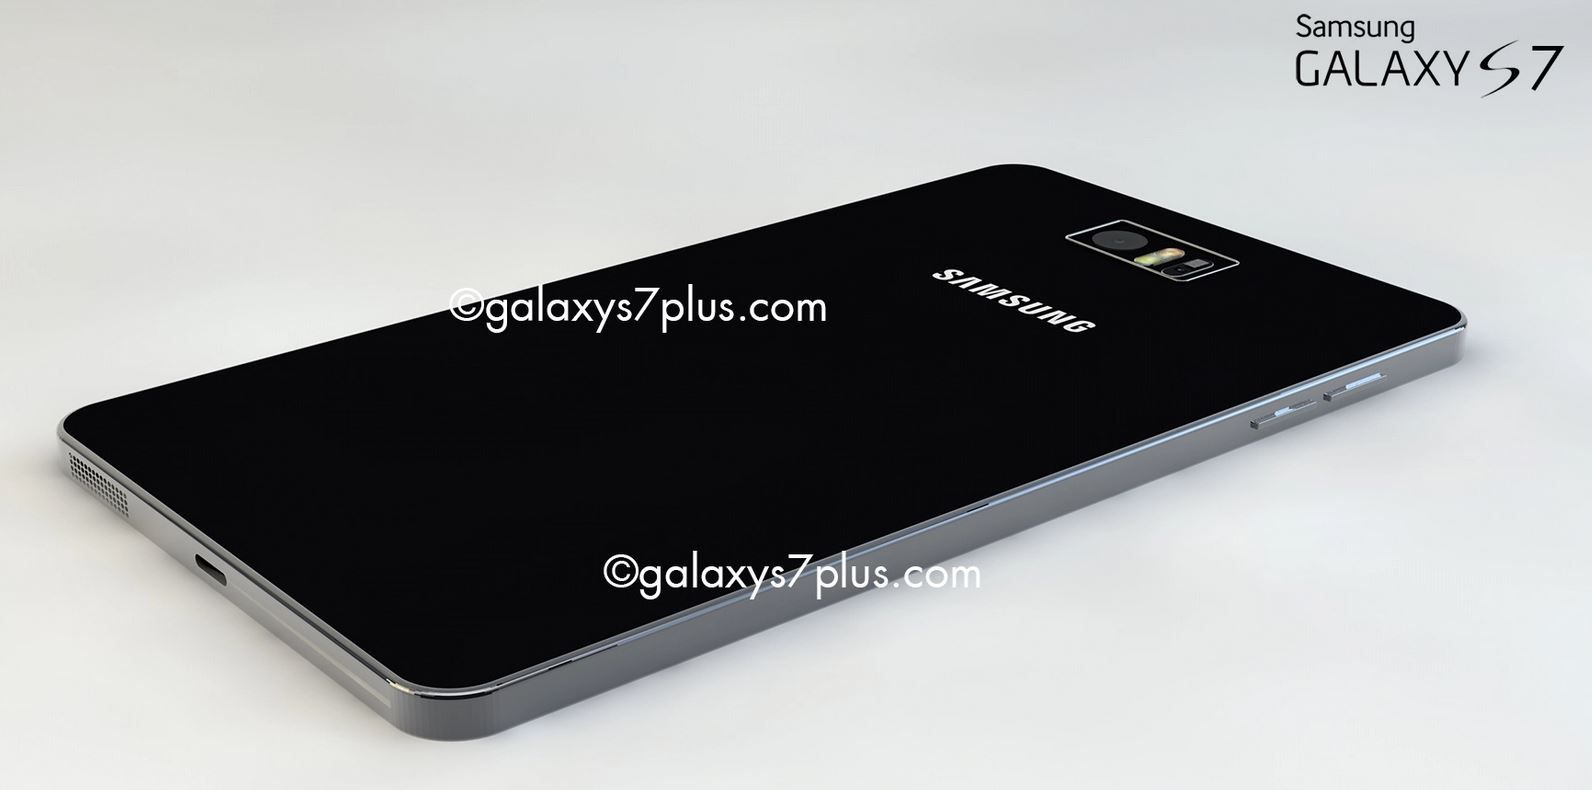 Samsung Galaxy S7 Especificaciones